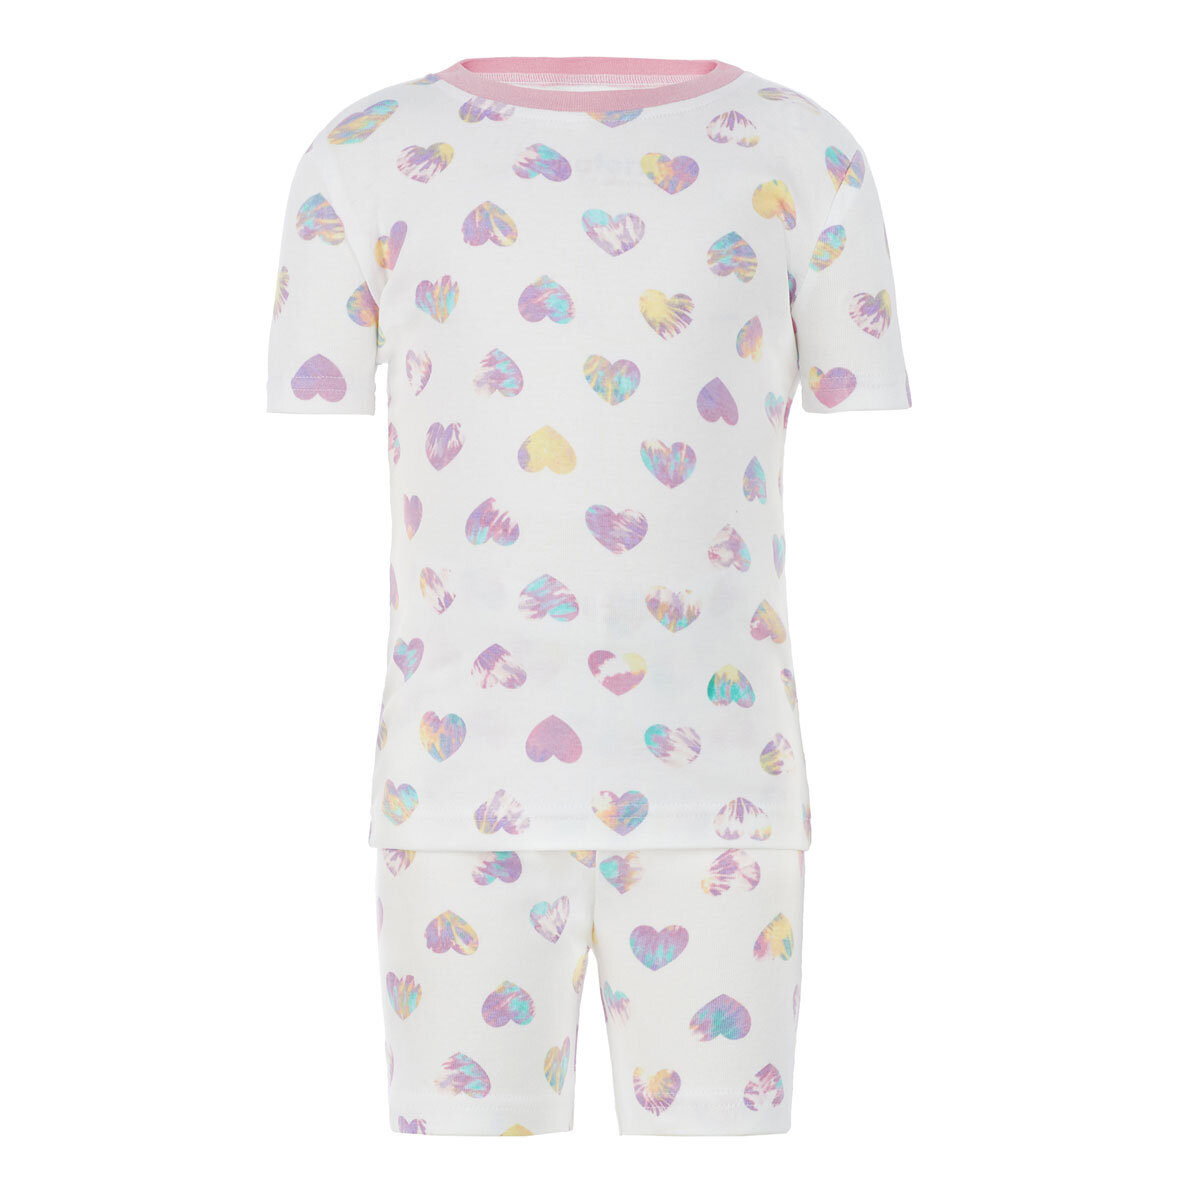 Kirkland Signature Children's Cotton 4 Piece Pyjama Set, Pink